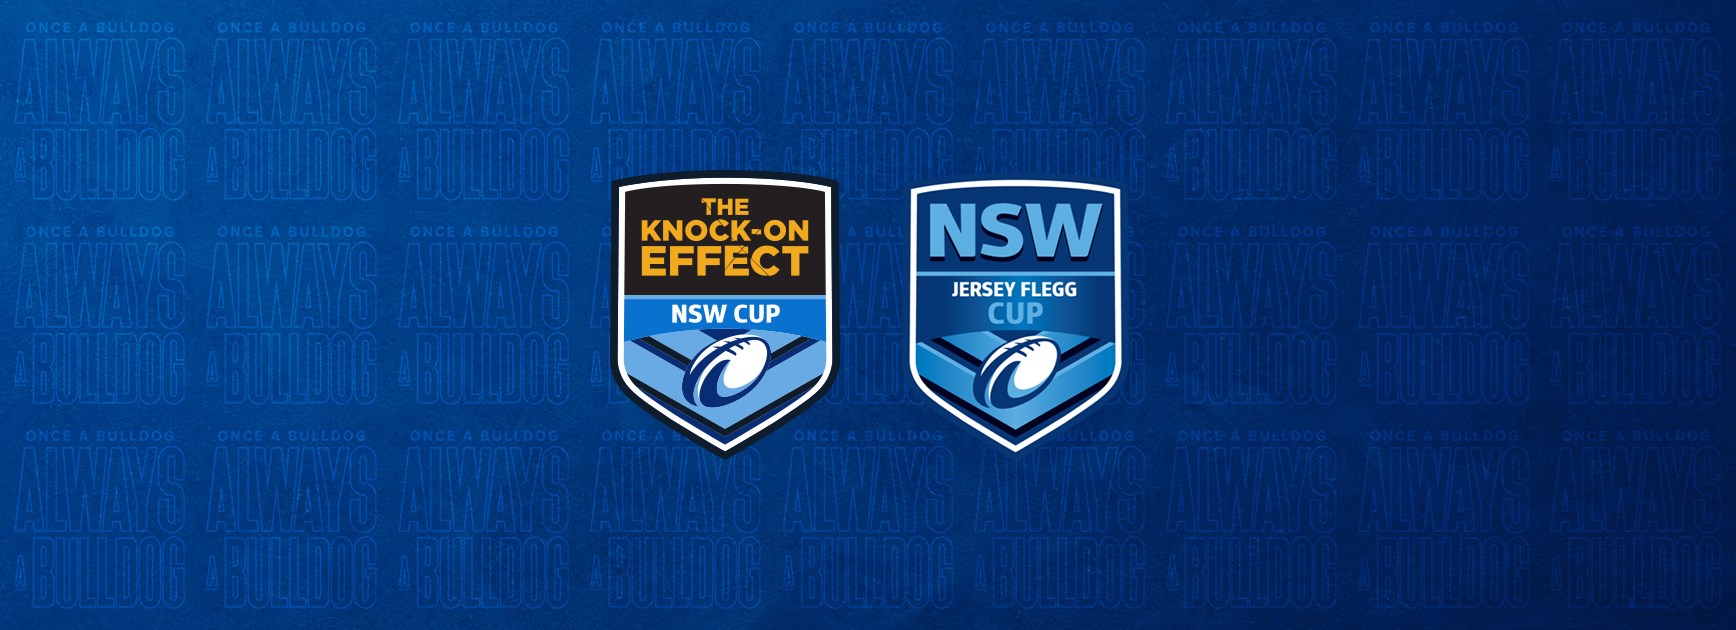 2022 NSW Cup & Jersey Flegg Cup fixtures released